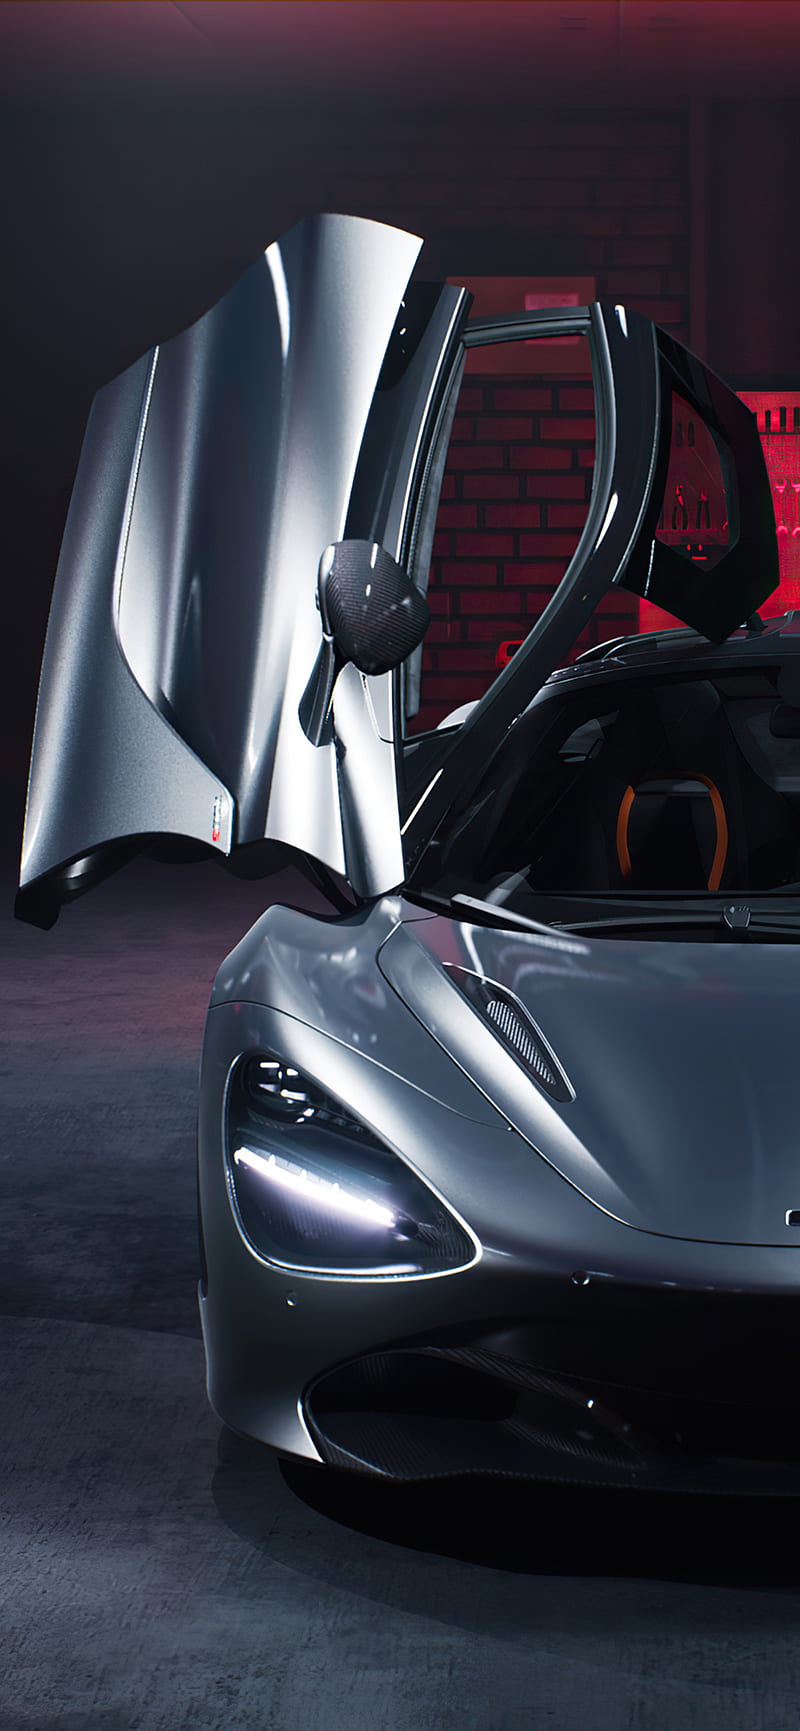 Hình nền  Siêu xe McLaren MP4 Neon Sự phản chiếu 3840x2160  gkykrf   1863433  Hình nền đẹp hd  WallHere